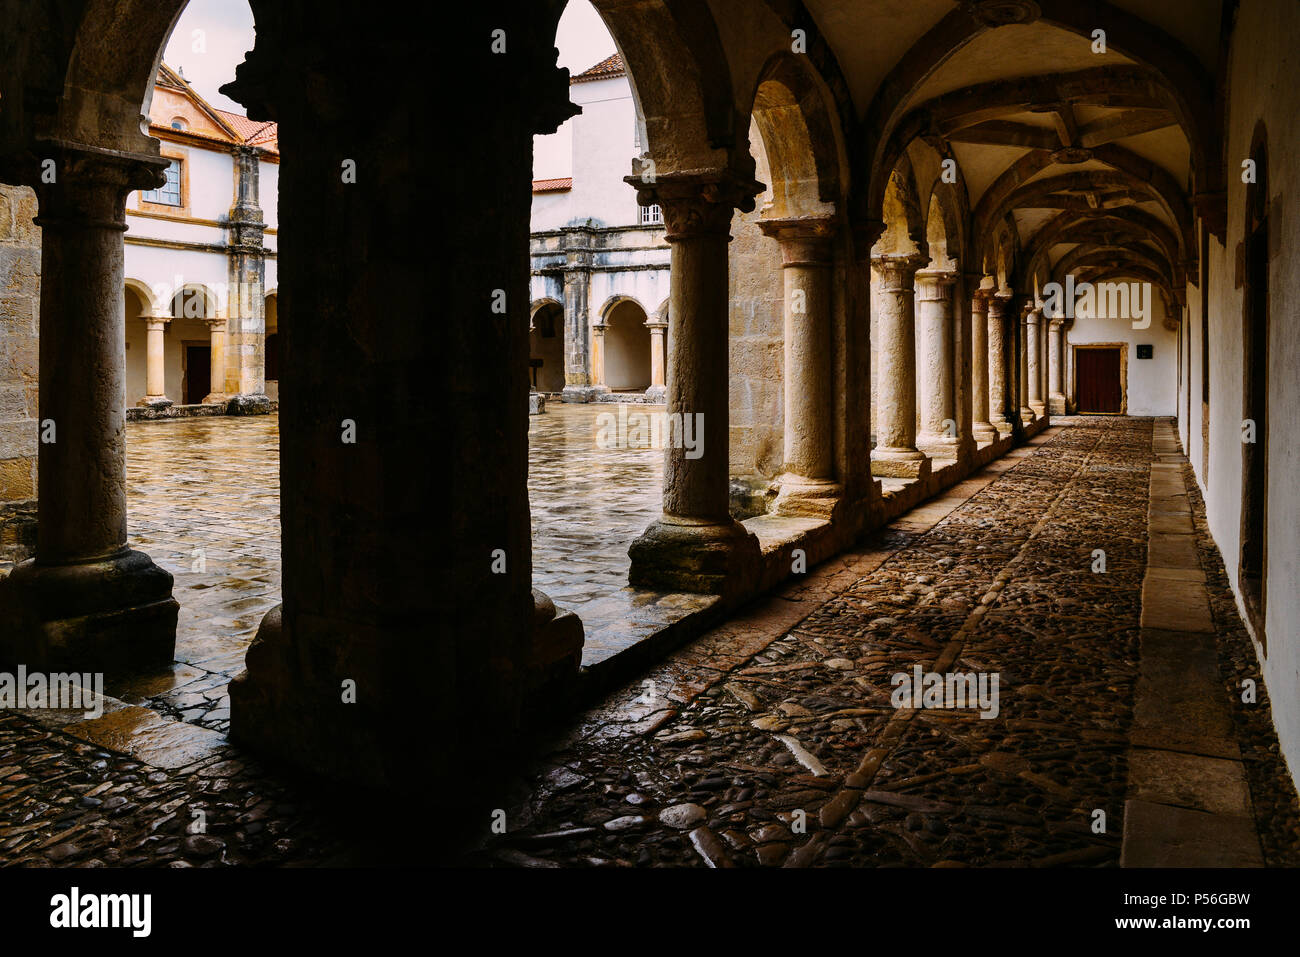 Tomar, Portugal - 10. Juni 2018: Claustro de D. Joao III, Innenhof im 12. Jahrhundert Kloster Christi in Tomar, Portugal UNESCO Weltkulturerbe Re Stockfoto